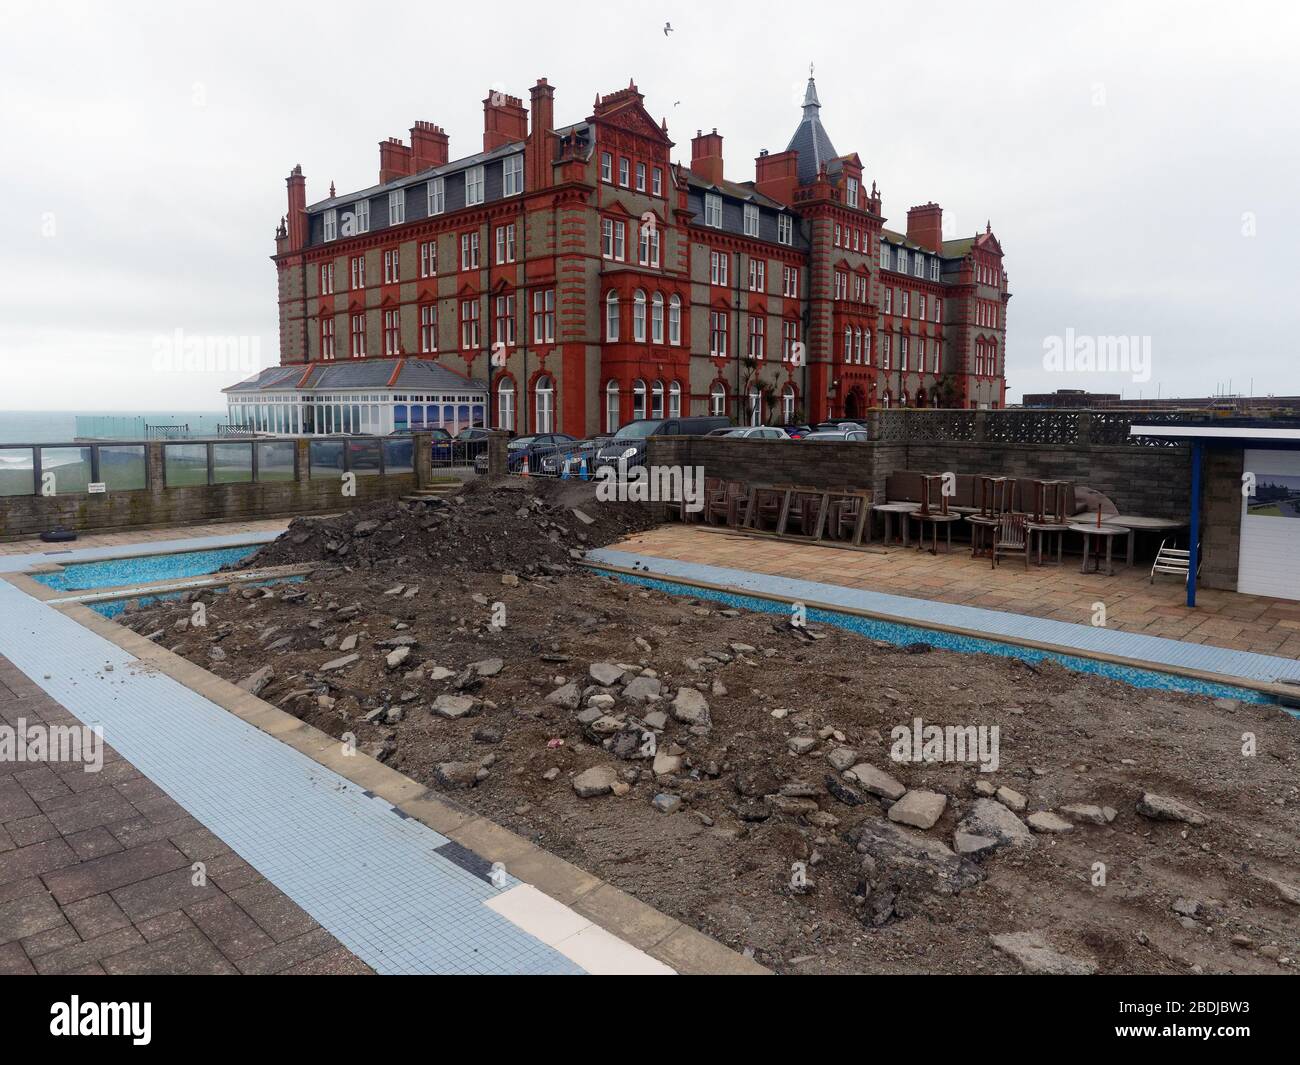 Décommission de la piscine à l'hôtel Headland. La vieille piscine extérieure est remplie de décombres. Cornwall Royaume-Uni. Crédit: Robert Taylor/Alay. Banque D'Images